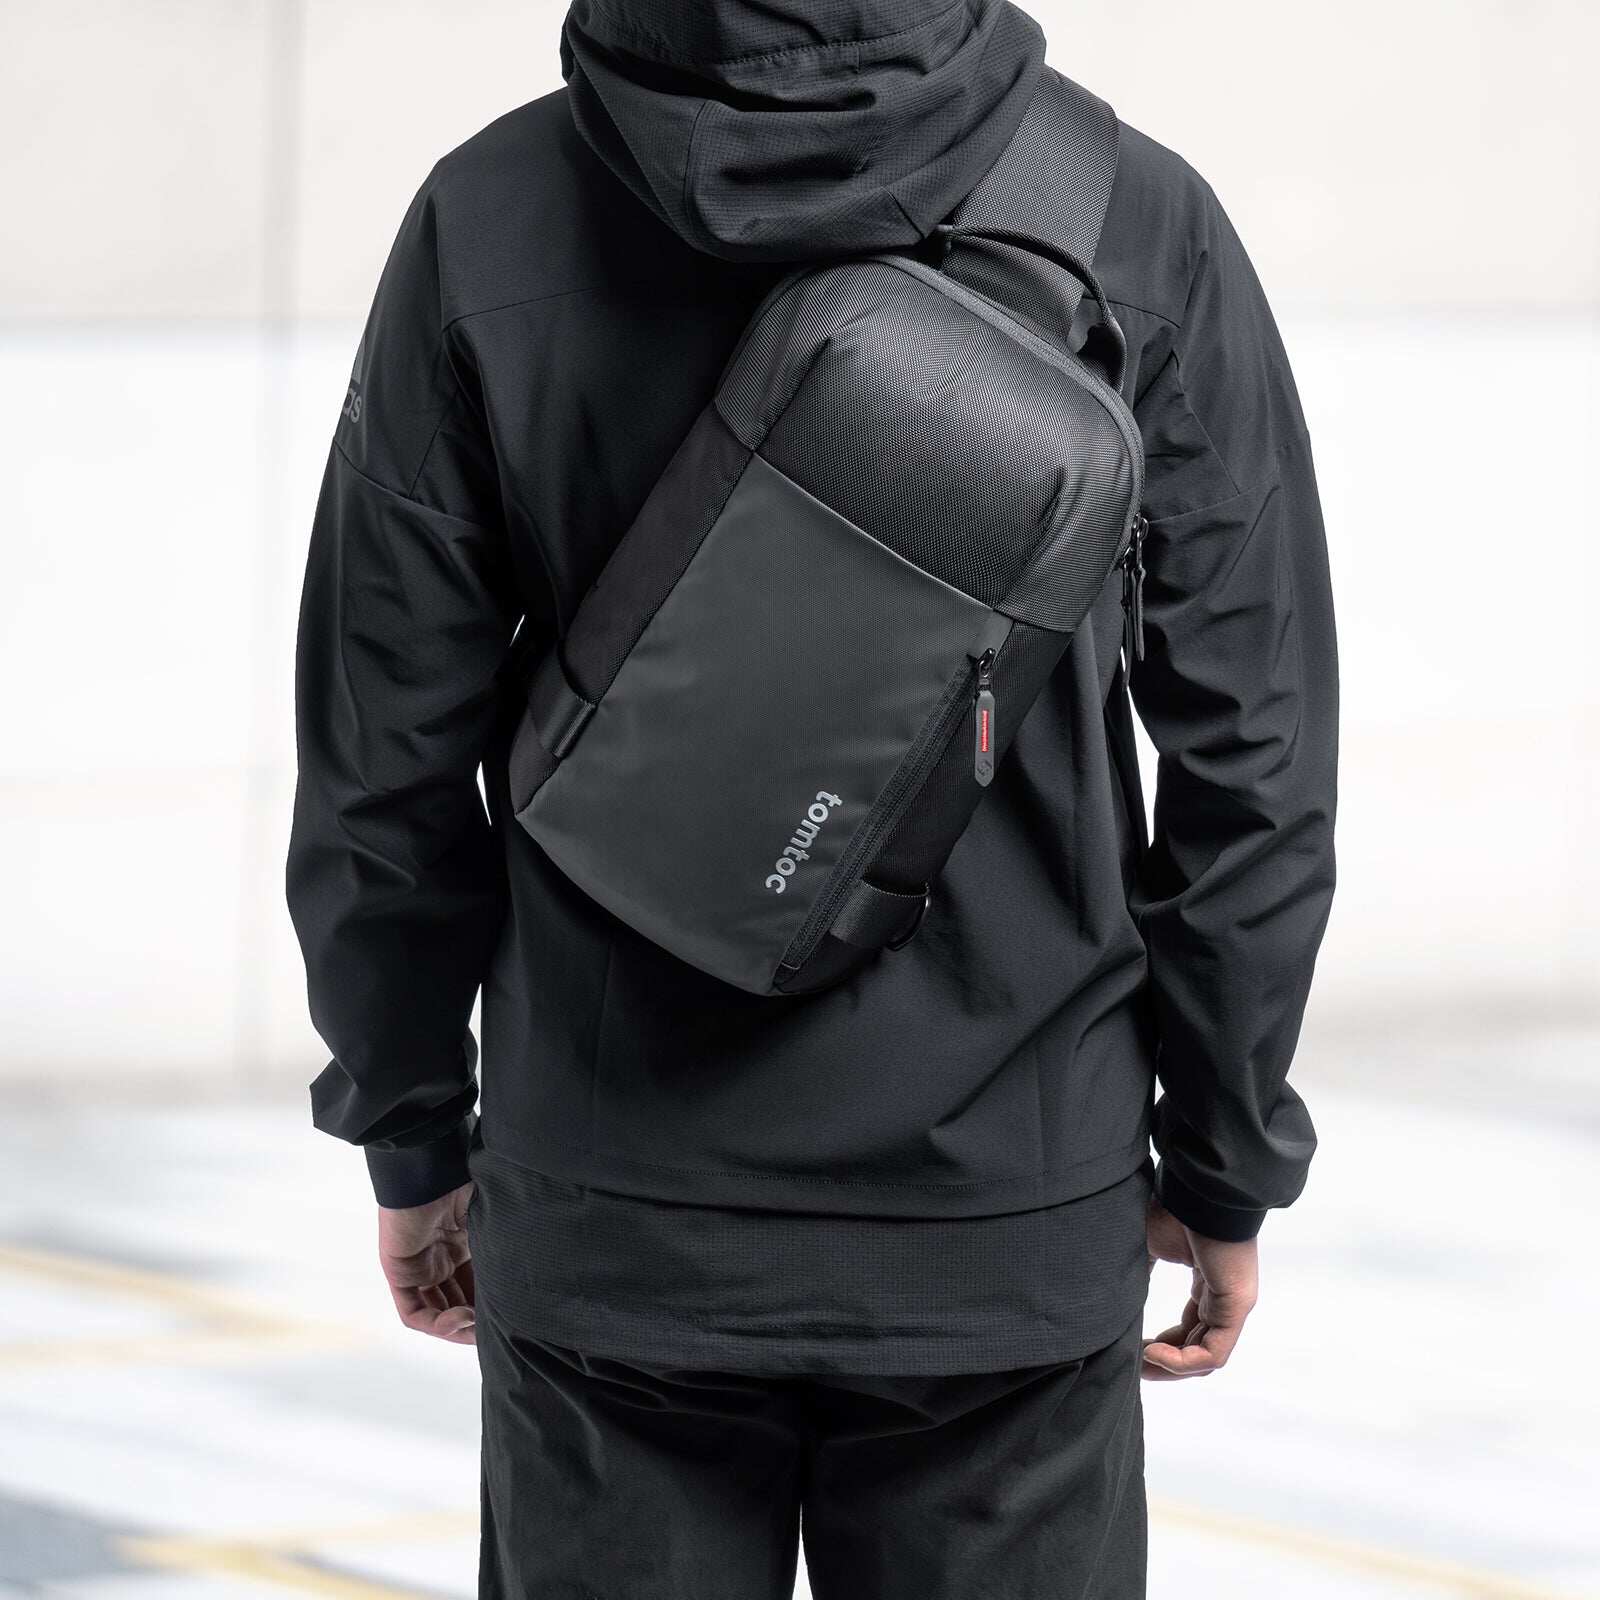 tomtoc 11 Inch Croxbody Men Shoulder Bag / Sling Bag / Crossbody Bag - Black